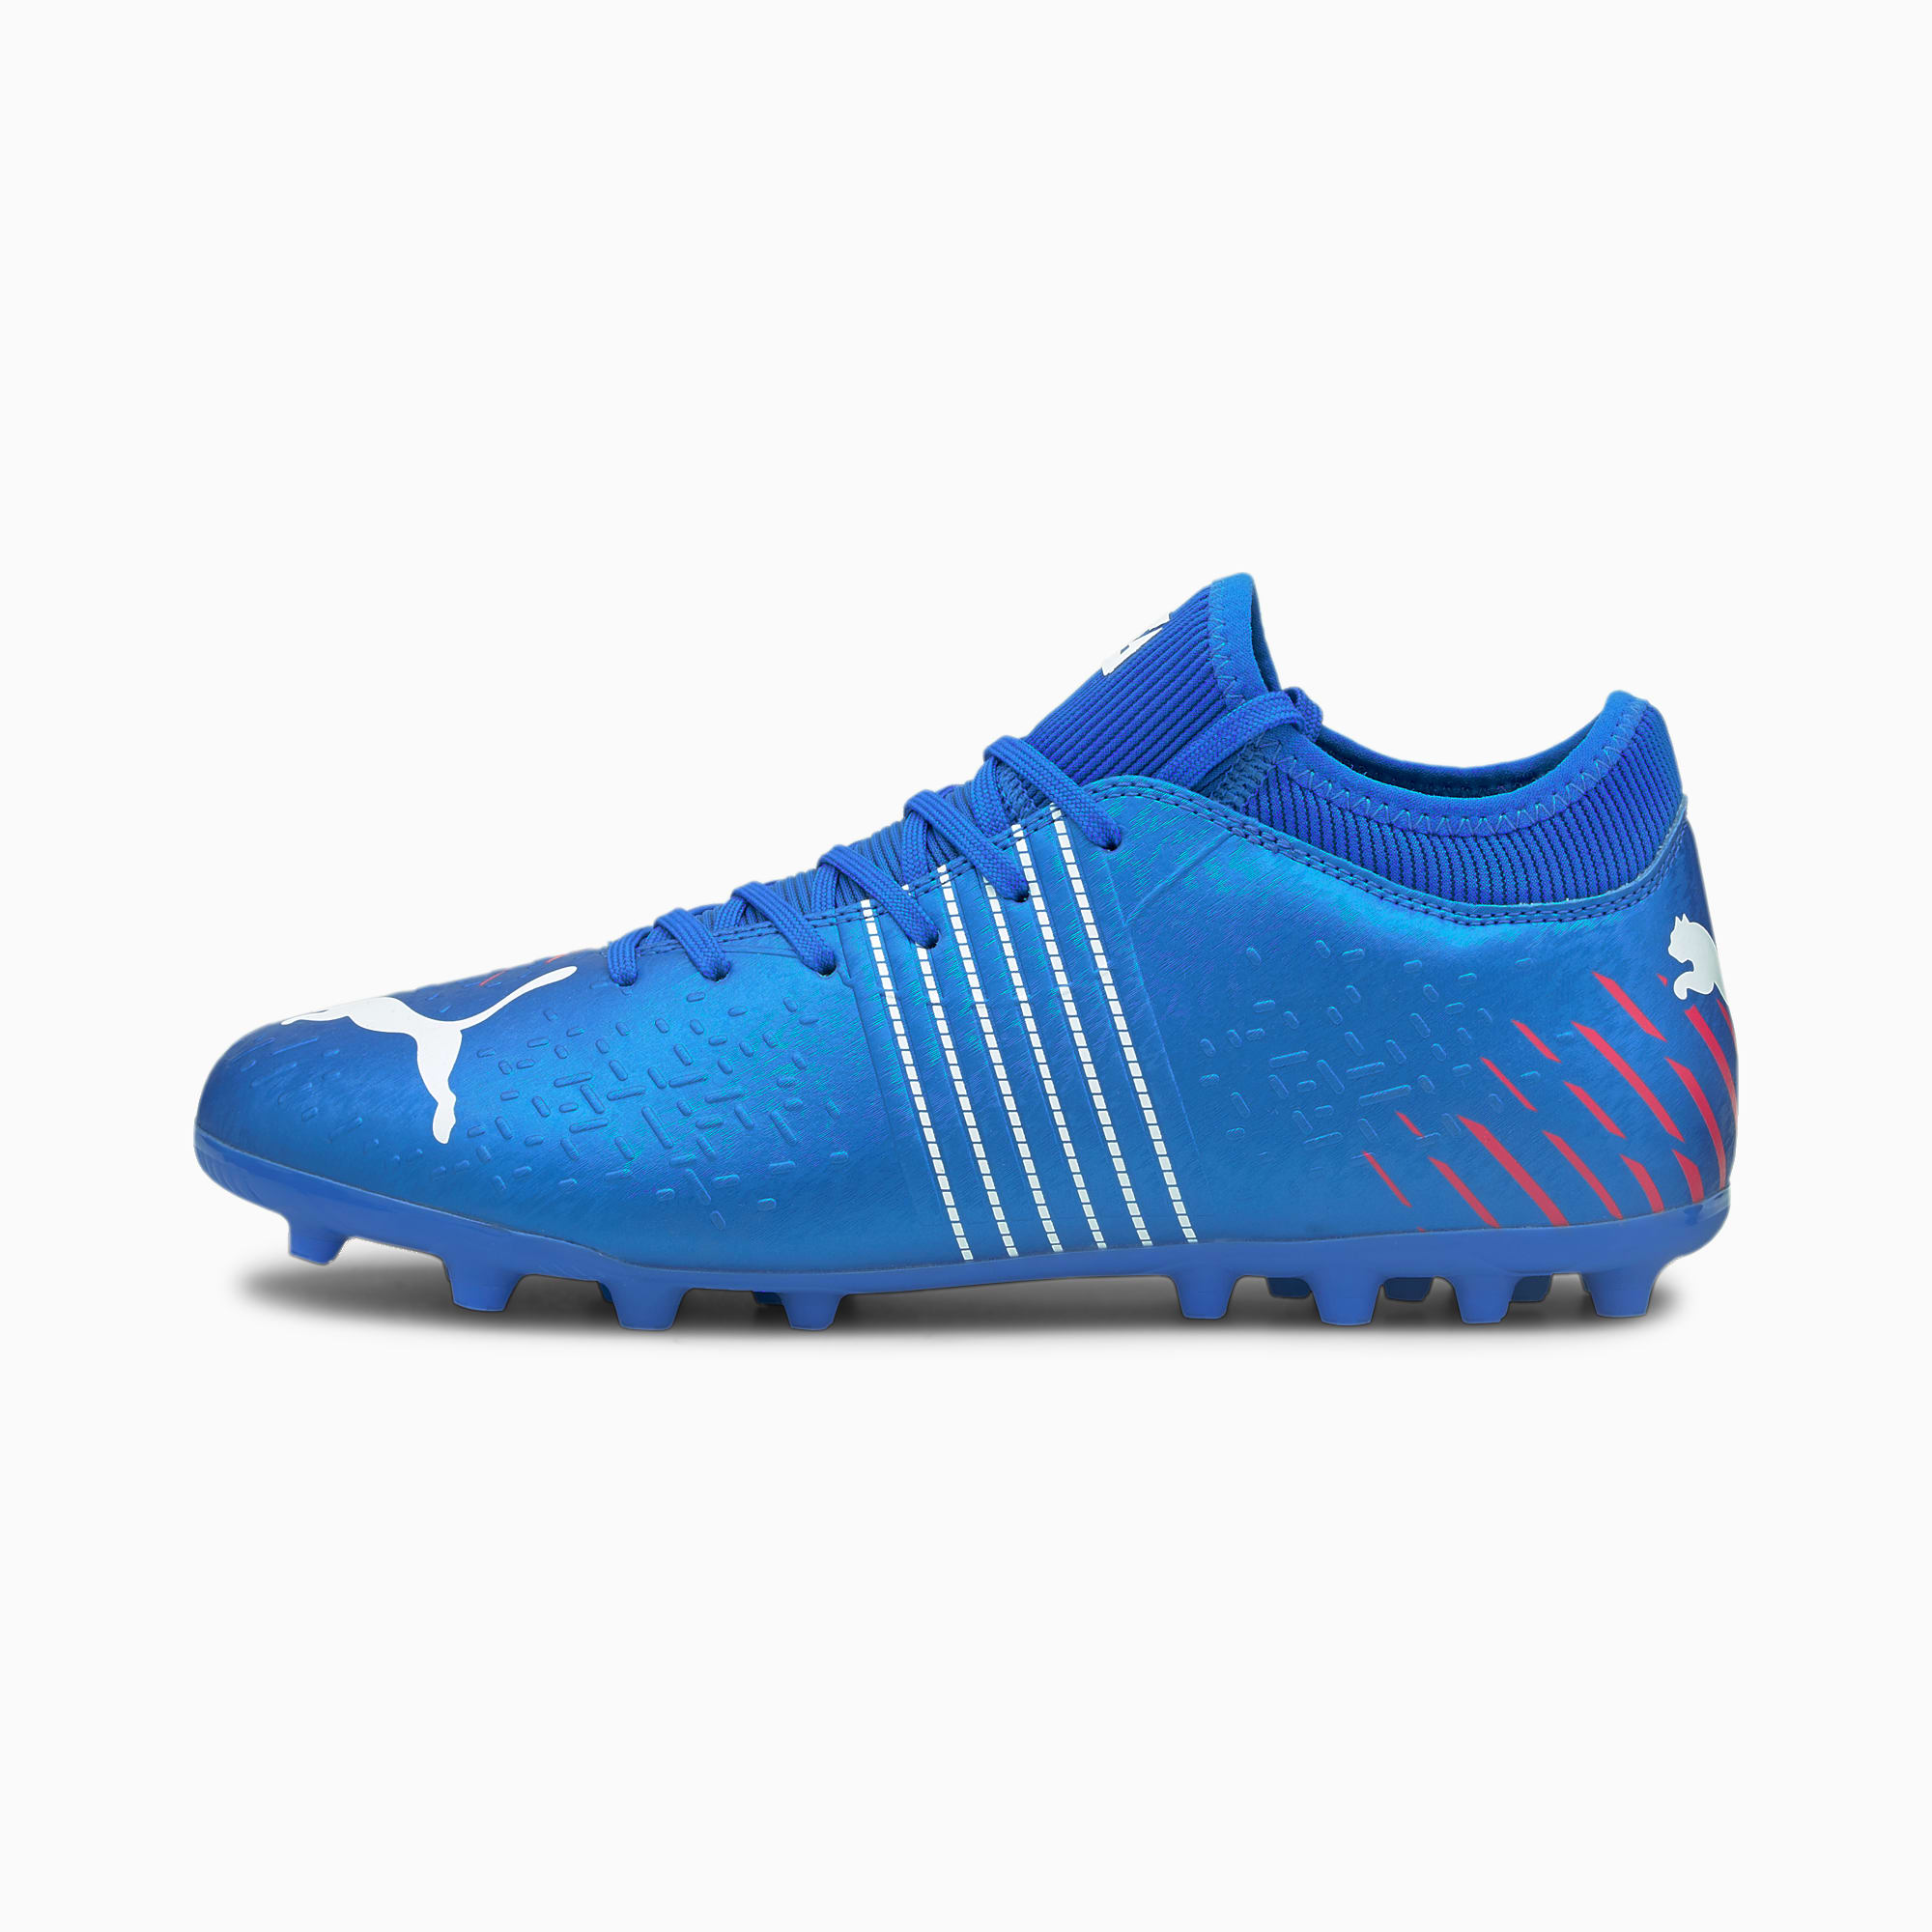 PUMA Future Z 4.2 MG voetbalschoenen , Blauw/Aucun, Maat 40,5